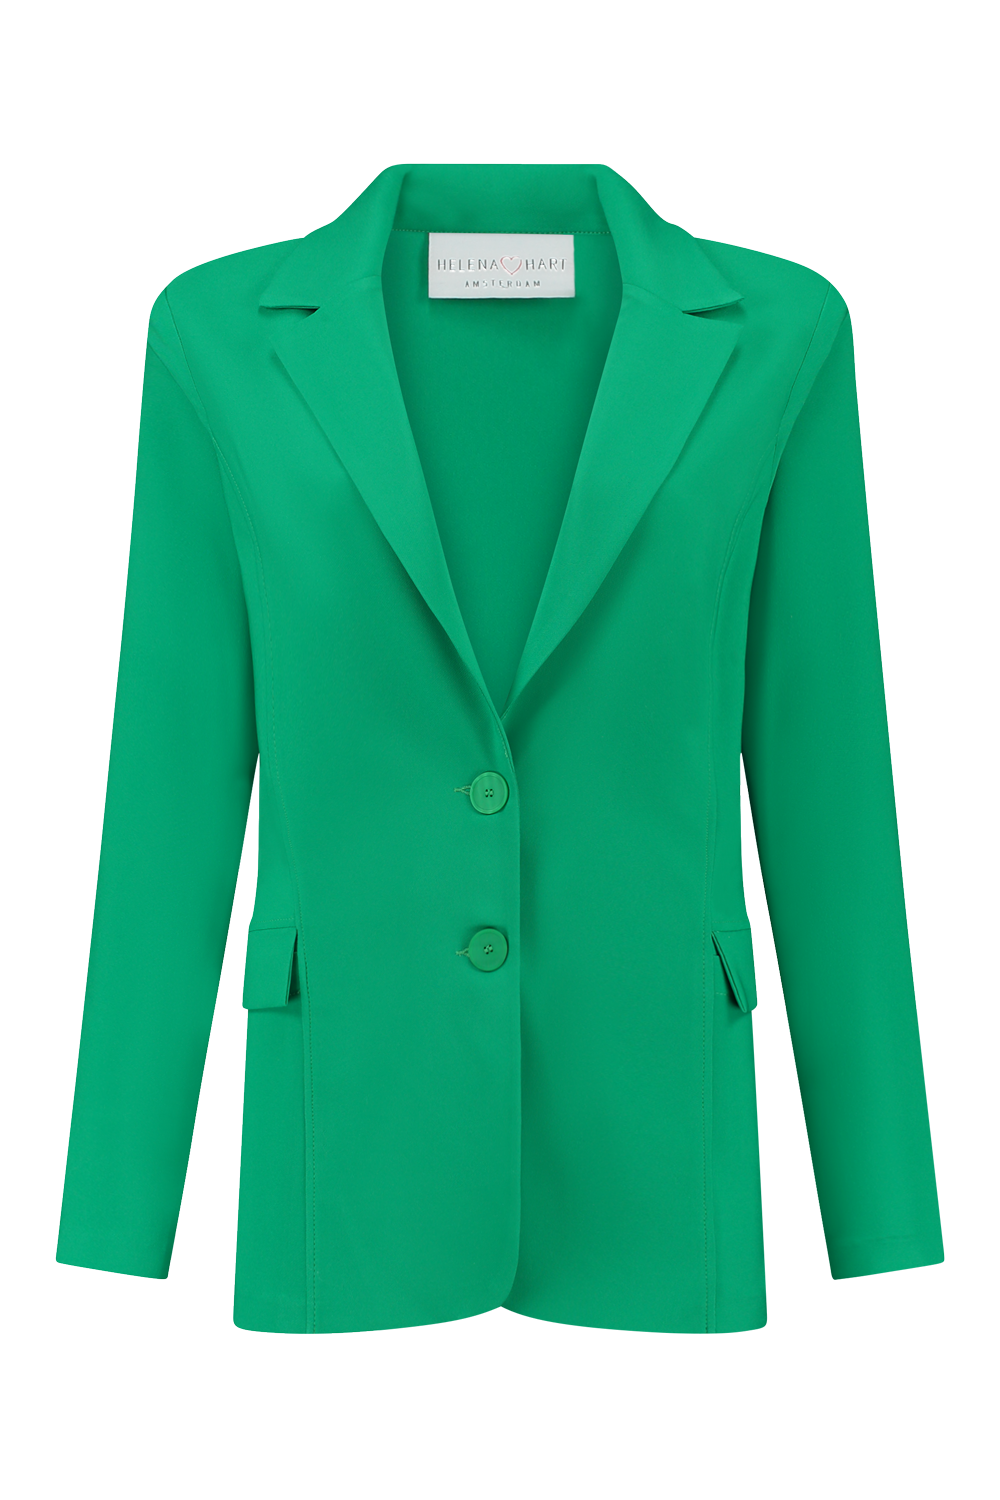 Let op intelligentie gebrek Helena Hart Blazer Suits Groen online kopen bij Carriera Damesmode.  7437-groen